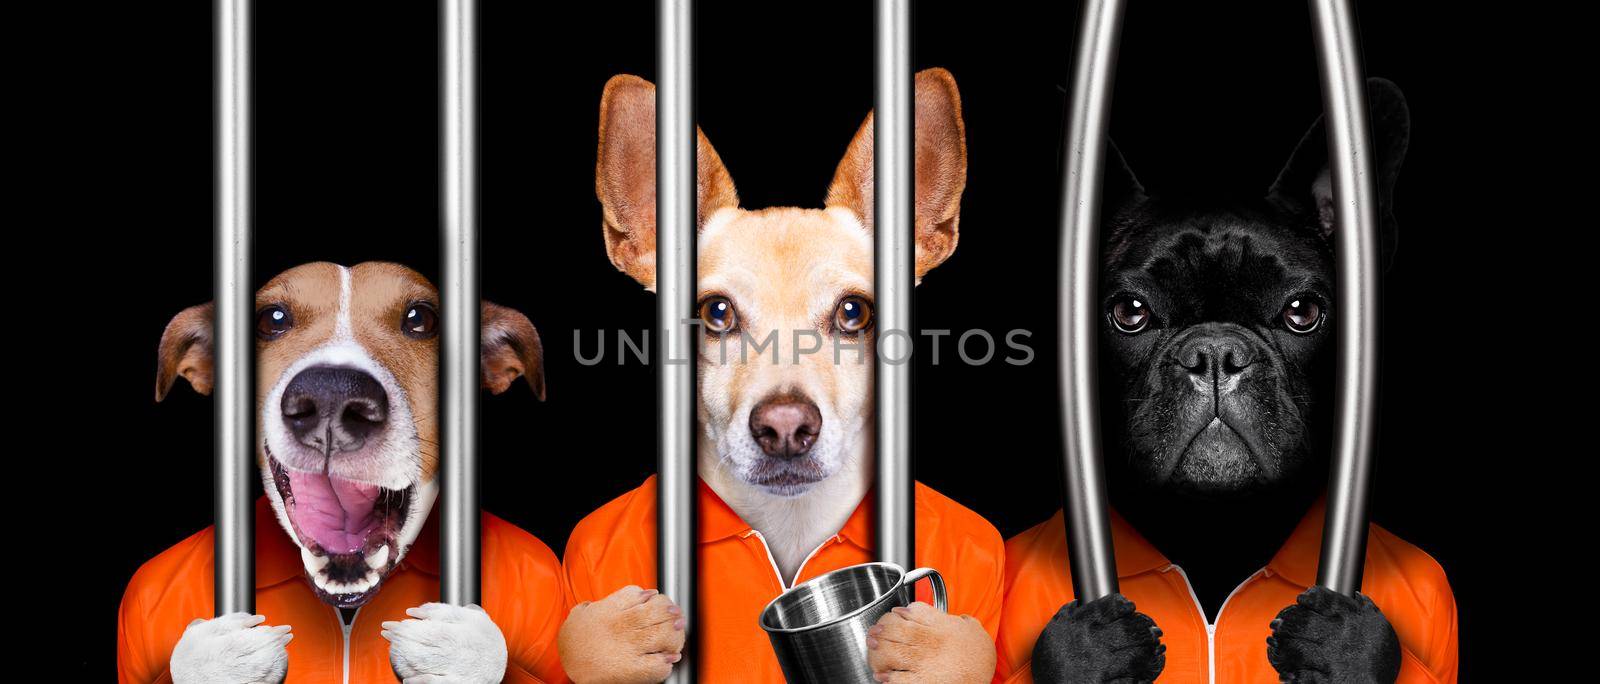 couple of  criminal dogs behind bars in police station, jail prison, or shelter  for bad behavior